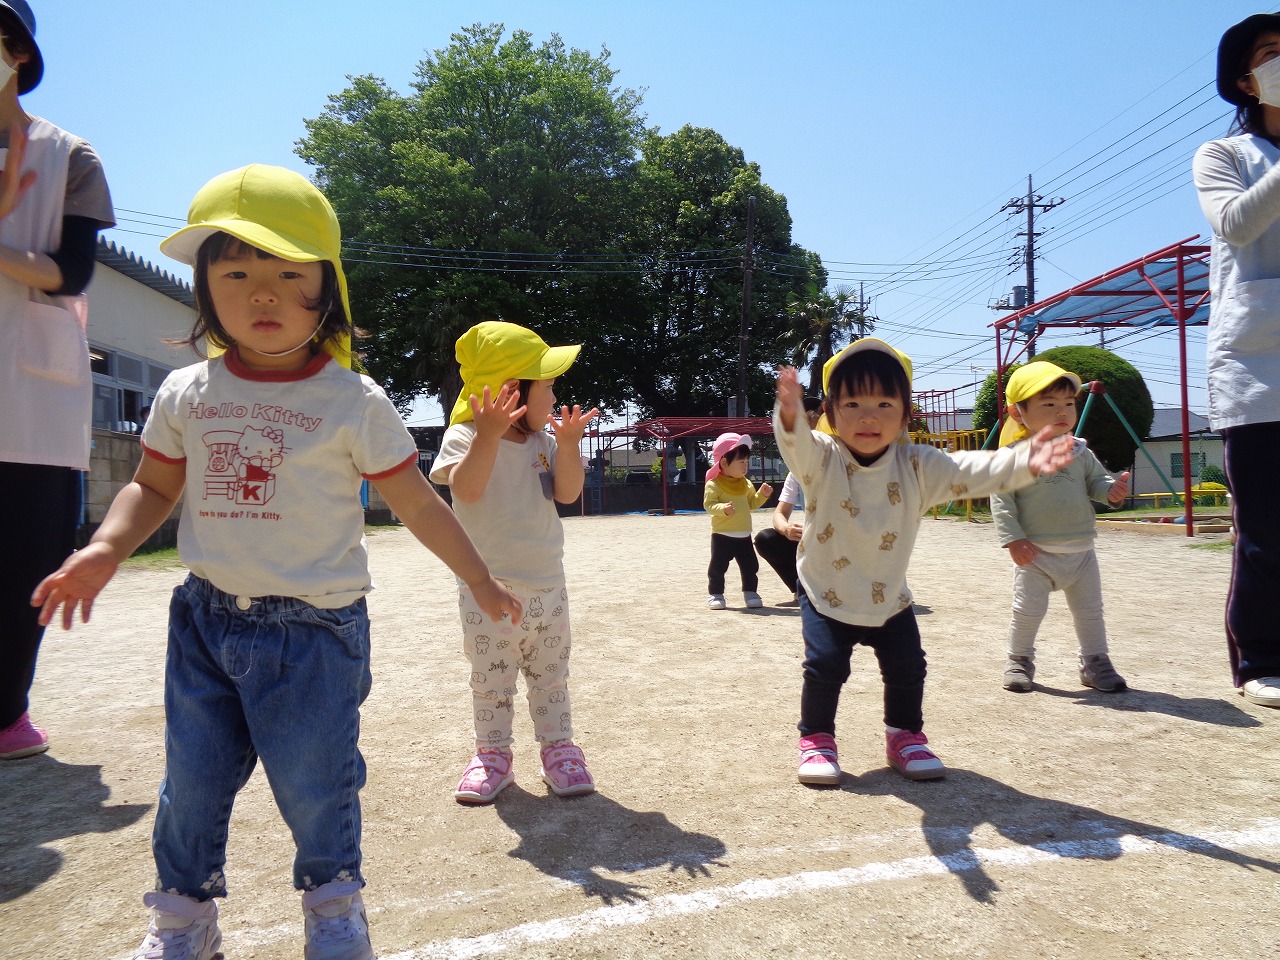 黄色帽子を被った園児達が、保育所の庭で両手を広げ、体を動かして体操している姿の写真